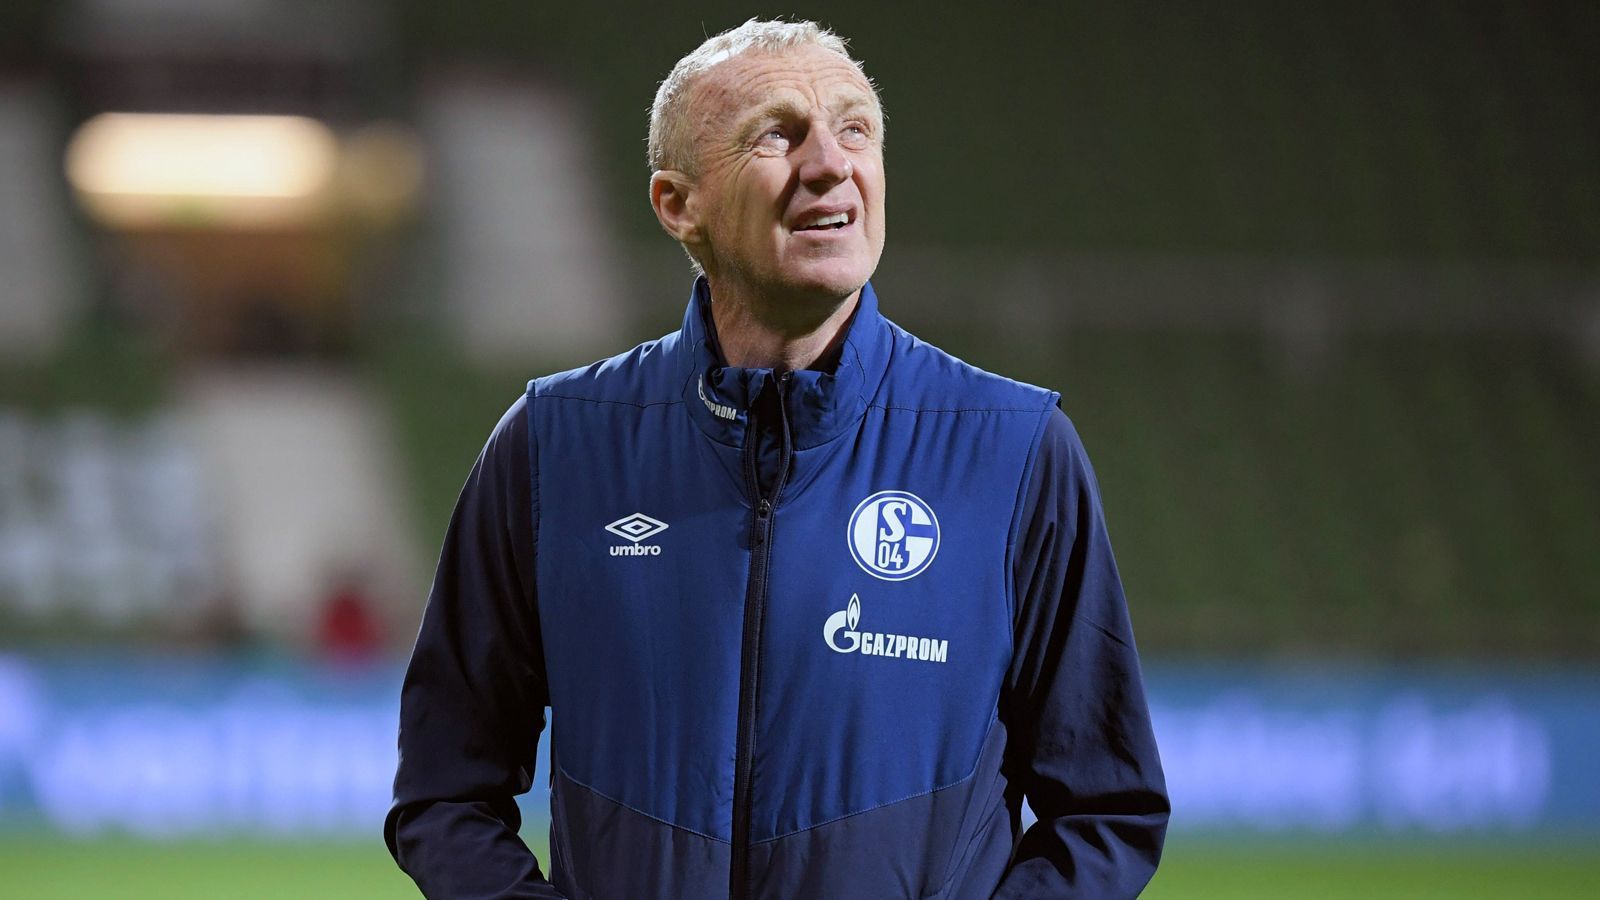 
                <strong>FC Schalke 04: Chefscout Seppo Eichkorn</strong><br>
                Seppo Eichkorn galt jahrelang als loyaler Assistent von Felix Magath. Das Duo gewann gemeinsam drei Meistertitel, zwei mit den Bayern und einen 2009 mit Wolfsburg. Unmittelbar danach nahm Magath Eichkorn mit auf Schalke, wo der 63-Jährige auch nach dem Aus seines langjährigen Chefs blieb. Eichkorn arbeitete unter Magaths Nachfolgern weiterhin als Assistent und stieg 2013 zum Chefscout der Gelsenkirchener auf, diese Rolle hat er bis heute inne. Unter Ex-Coach Domenico Tedesco kehrte Eichkorn sogar noch einmal für einige Spiele als Co-Trainer zurück auf die Bank von S04.
              